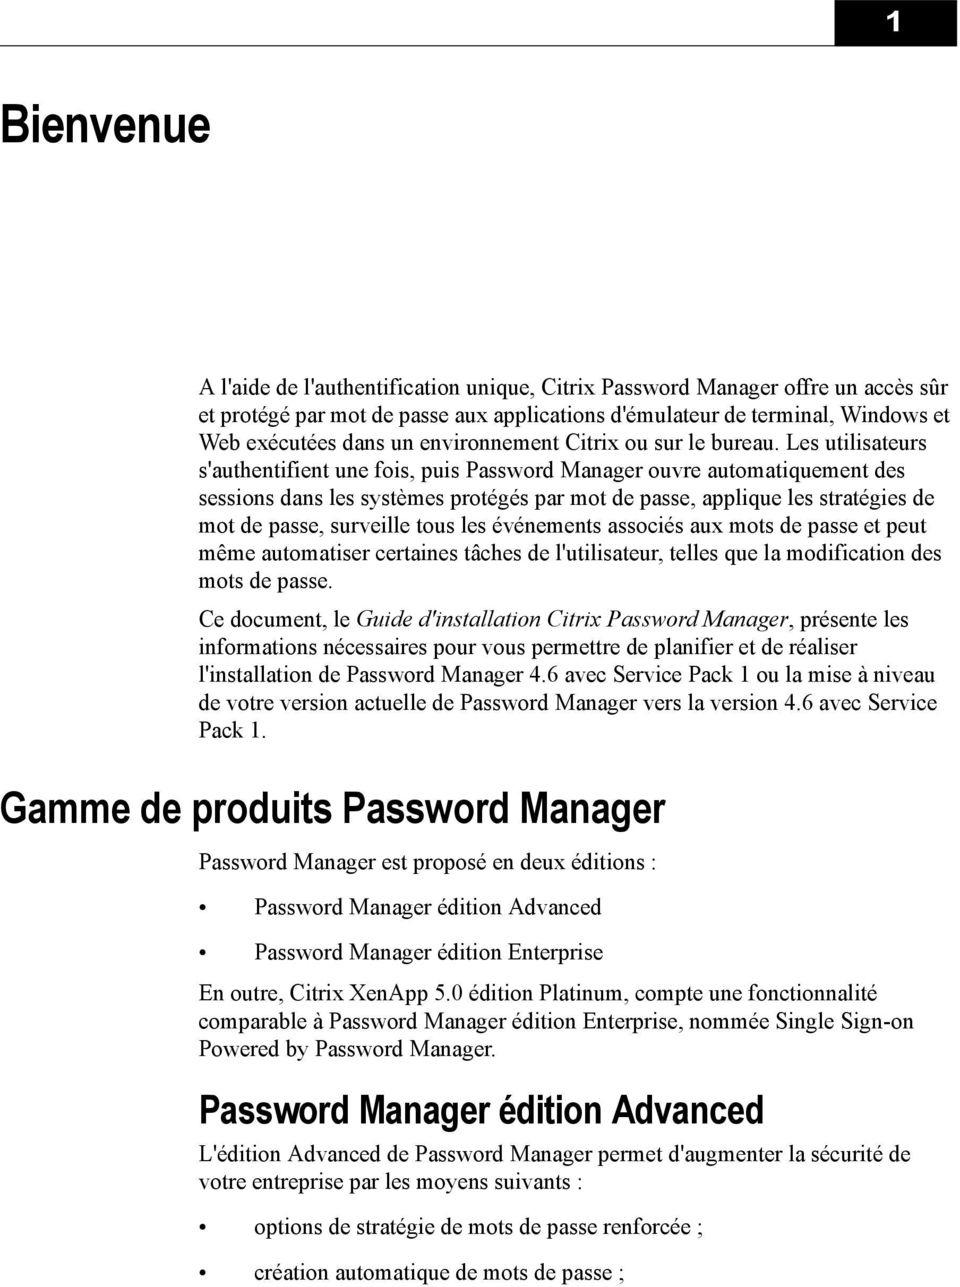 Les utilisateurs s'authentifient une fois, puis Password Manager ouvre automatiquement des sessions dans les systèmes protégés par mot de passe, applique les stratégies de mot de passe, surveille